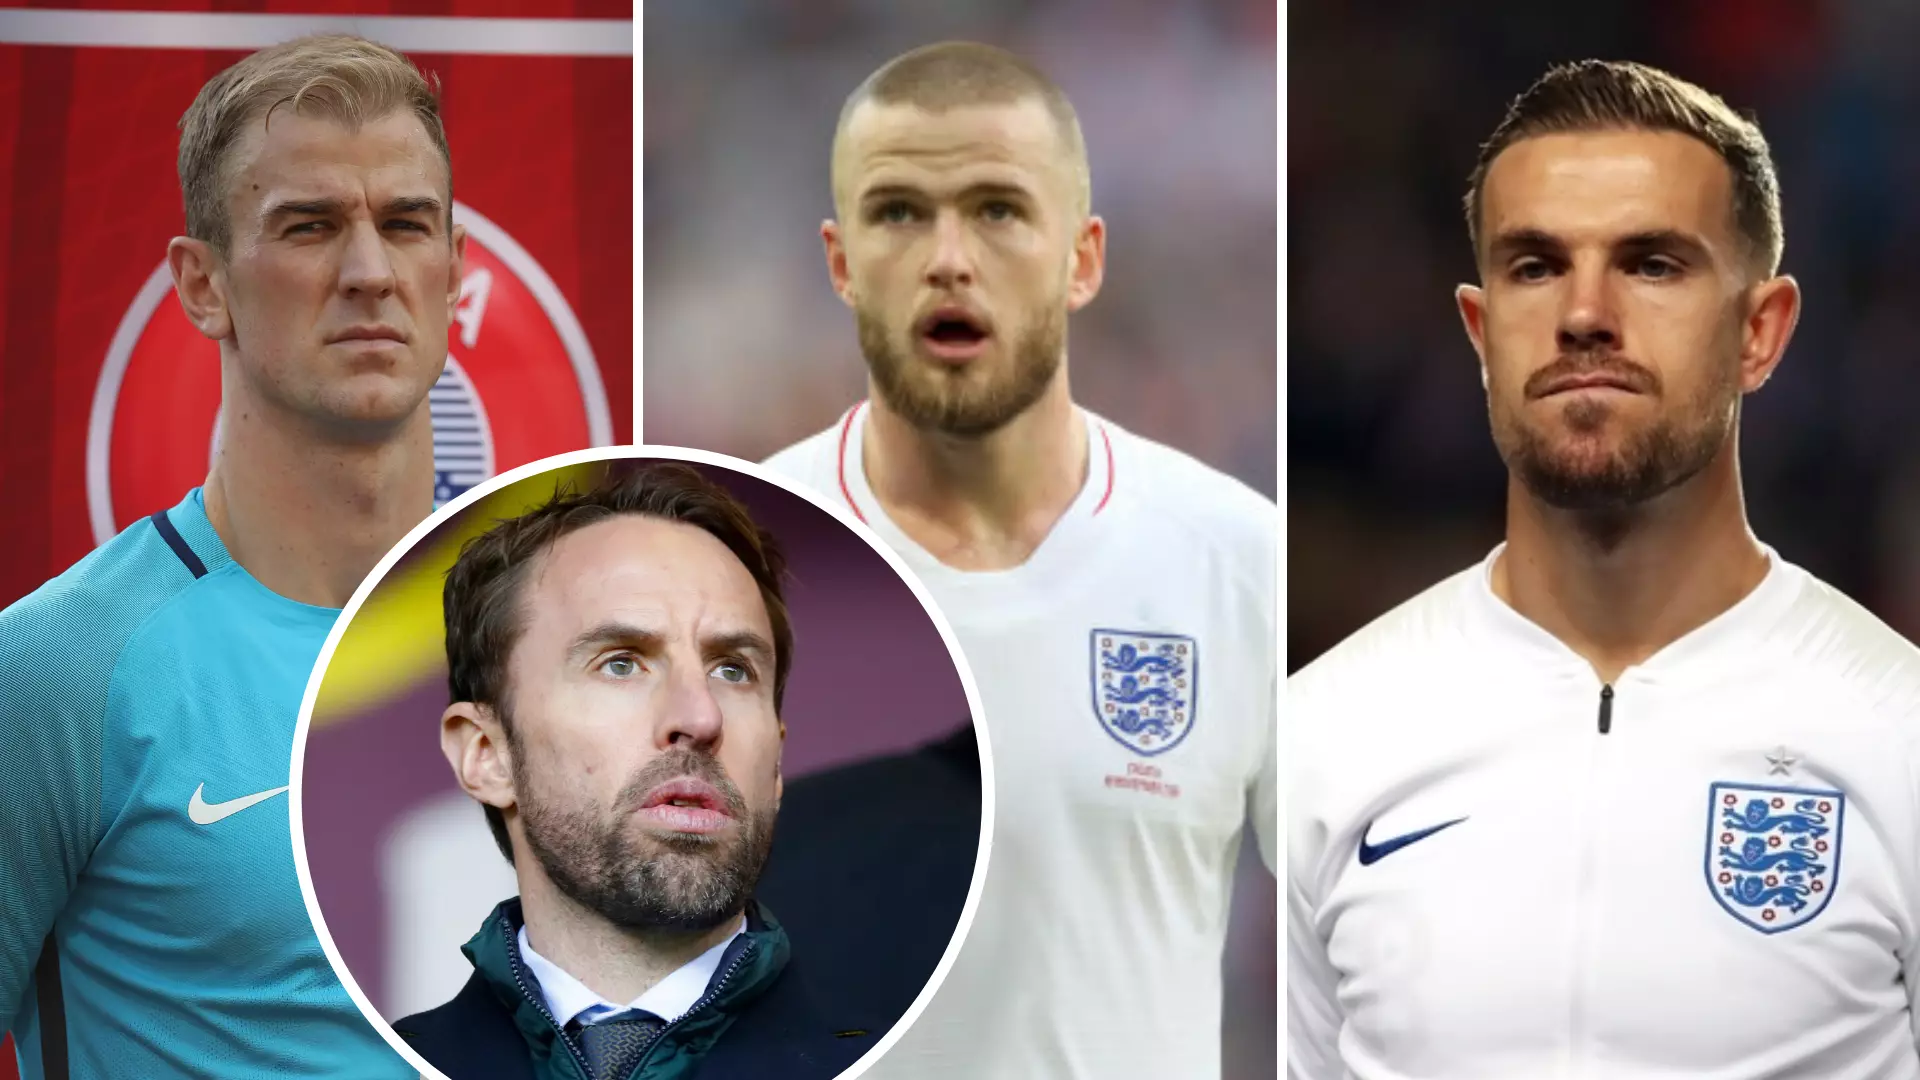 BBC Made A 2015 Prediction For England's Euro 2020 Squad